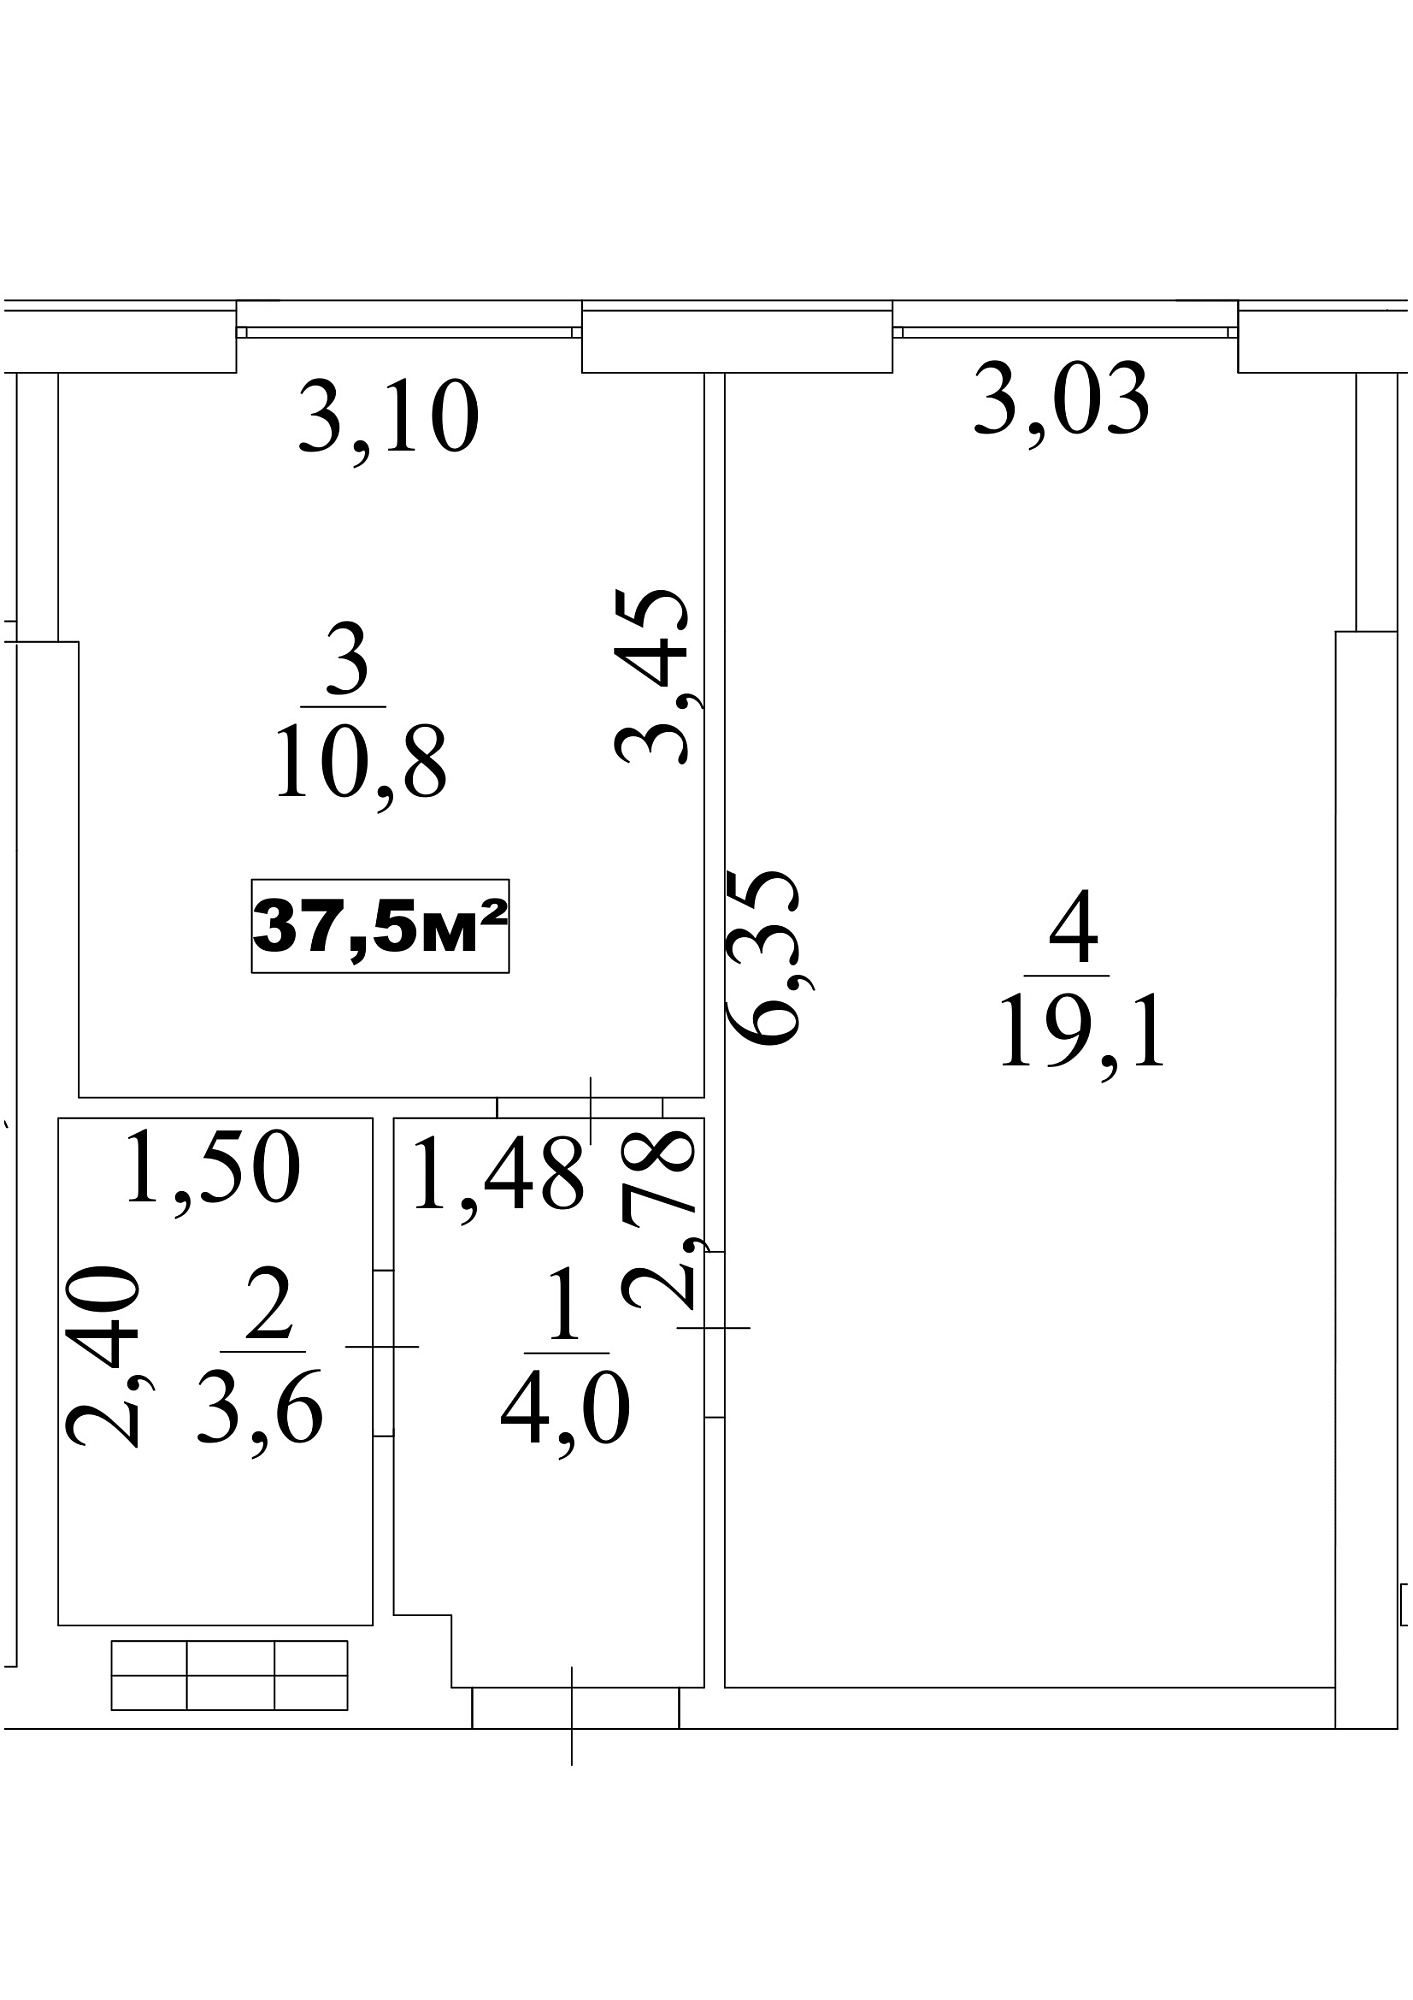 Планировка 1-к квартира площей 37.5м2, AB-10-04/0034а.